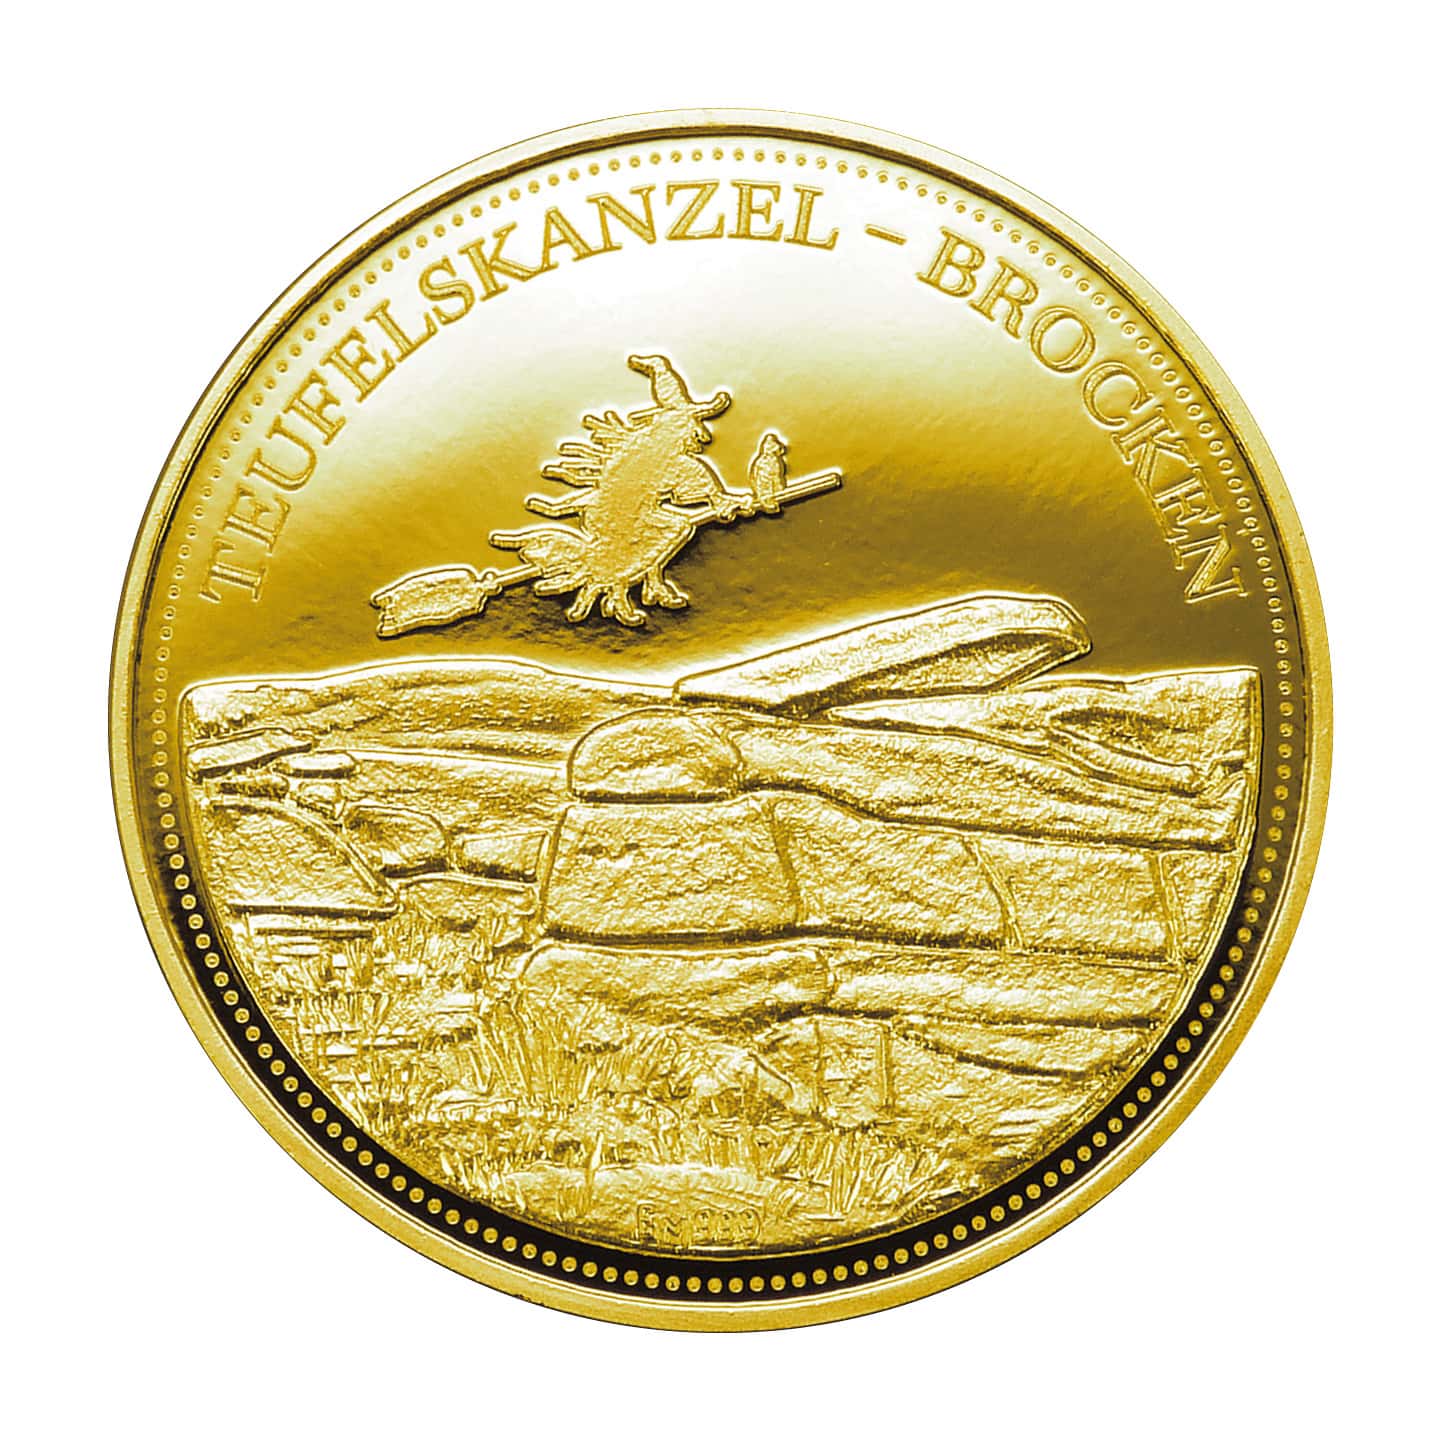 Hexentaler "Teufelskanzel-Brocken" - Gold